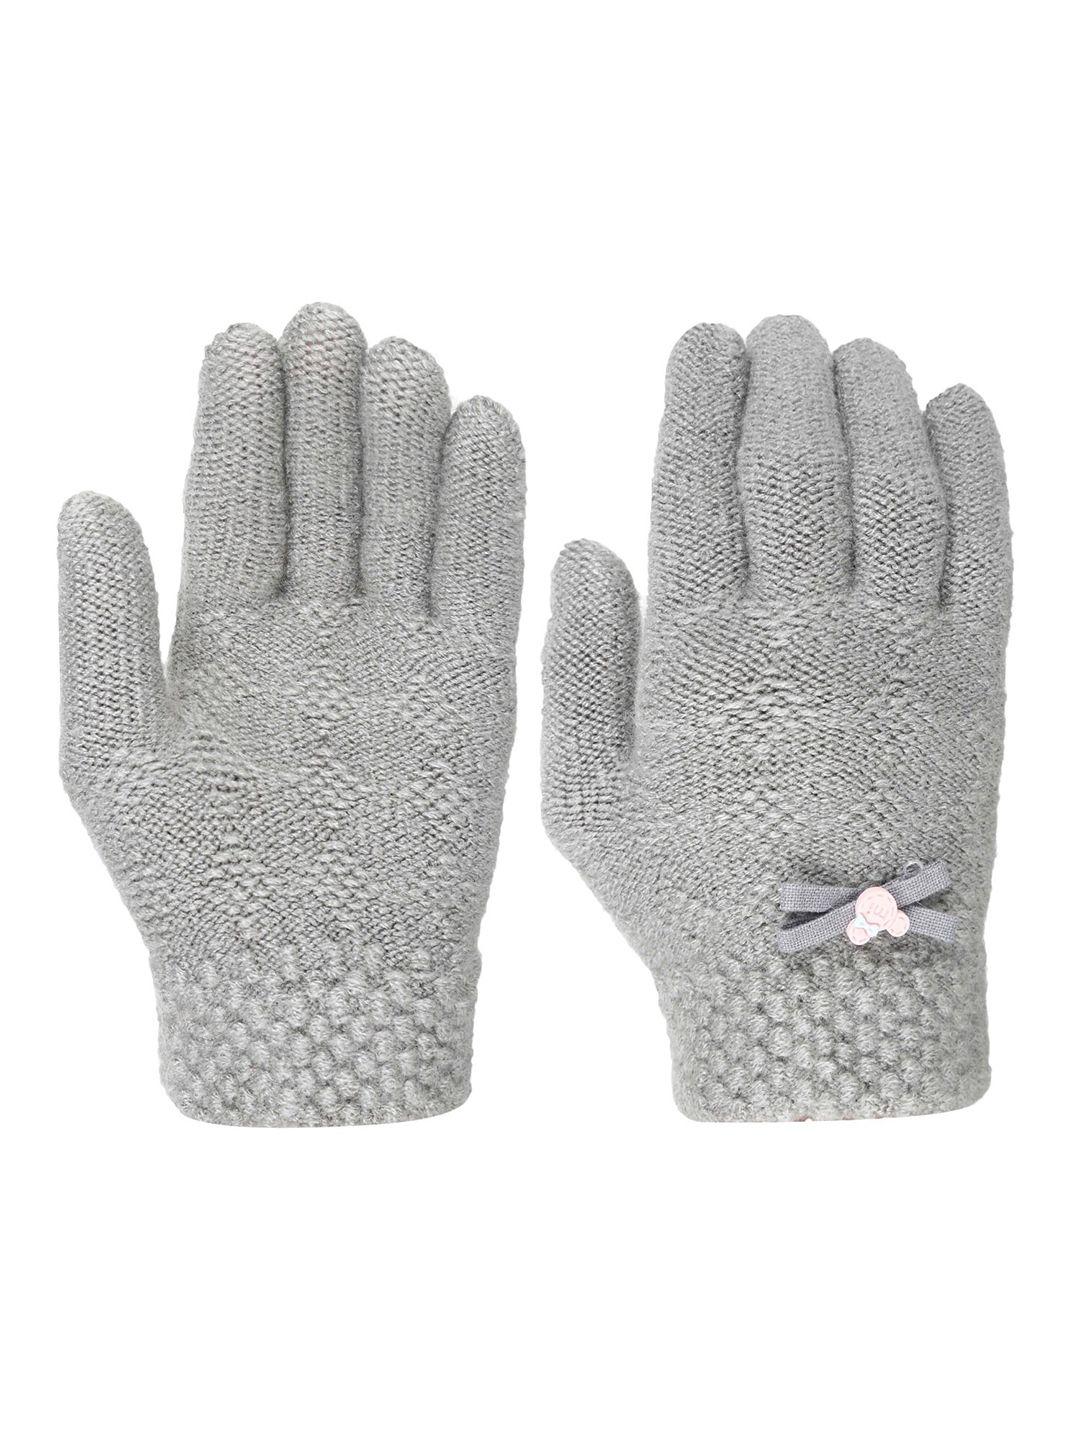 fabseasons kids patterned winter gloves